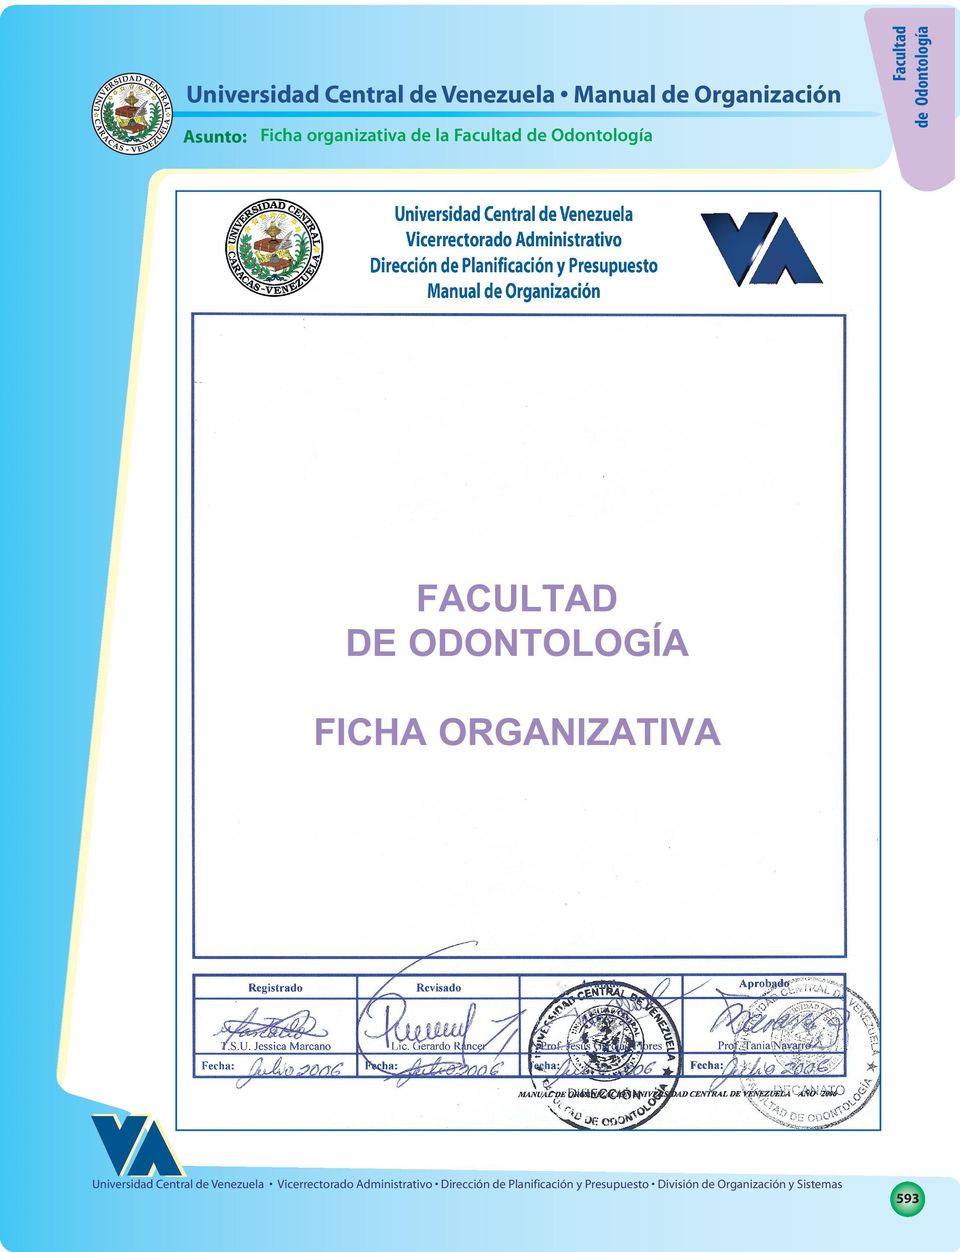 Universidad Central de Venezuela Manual de